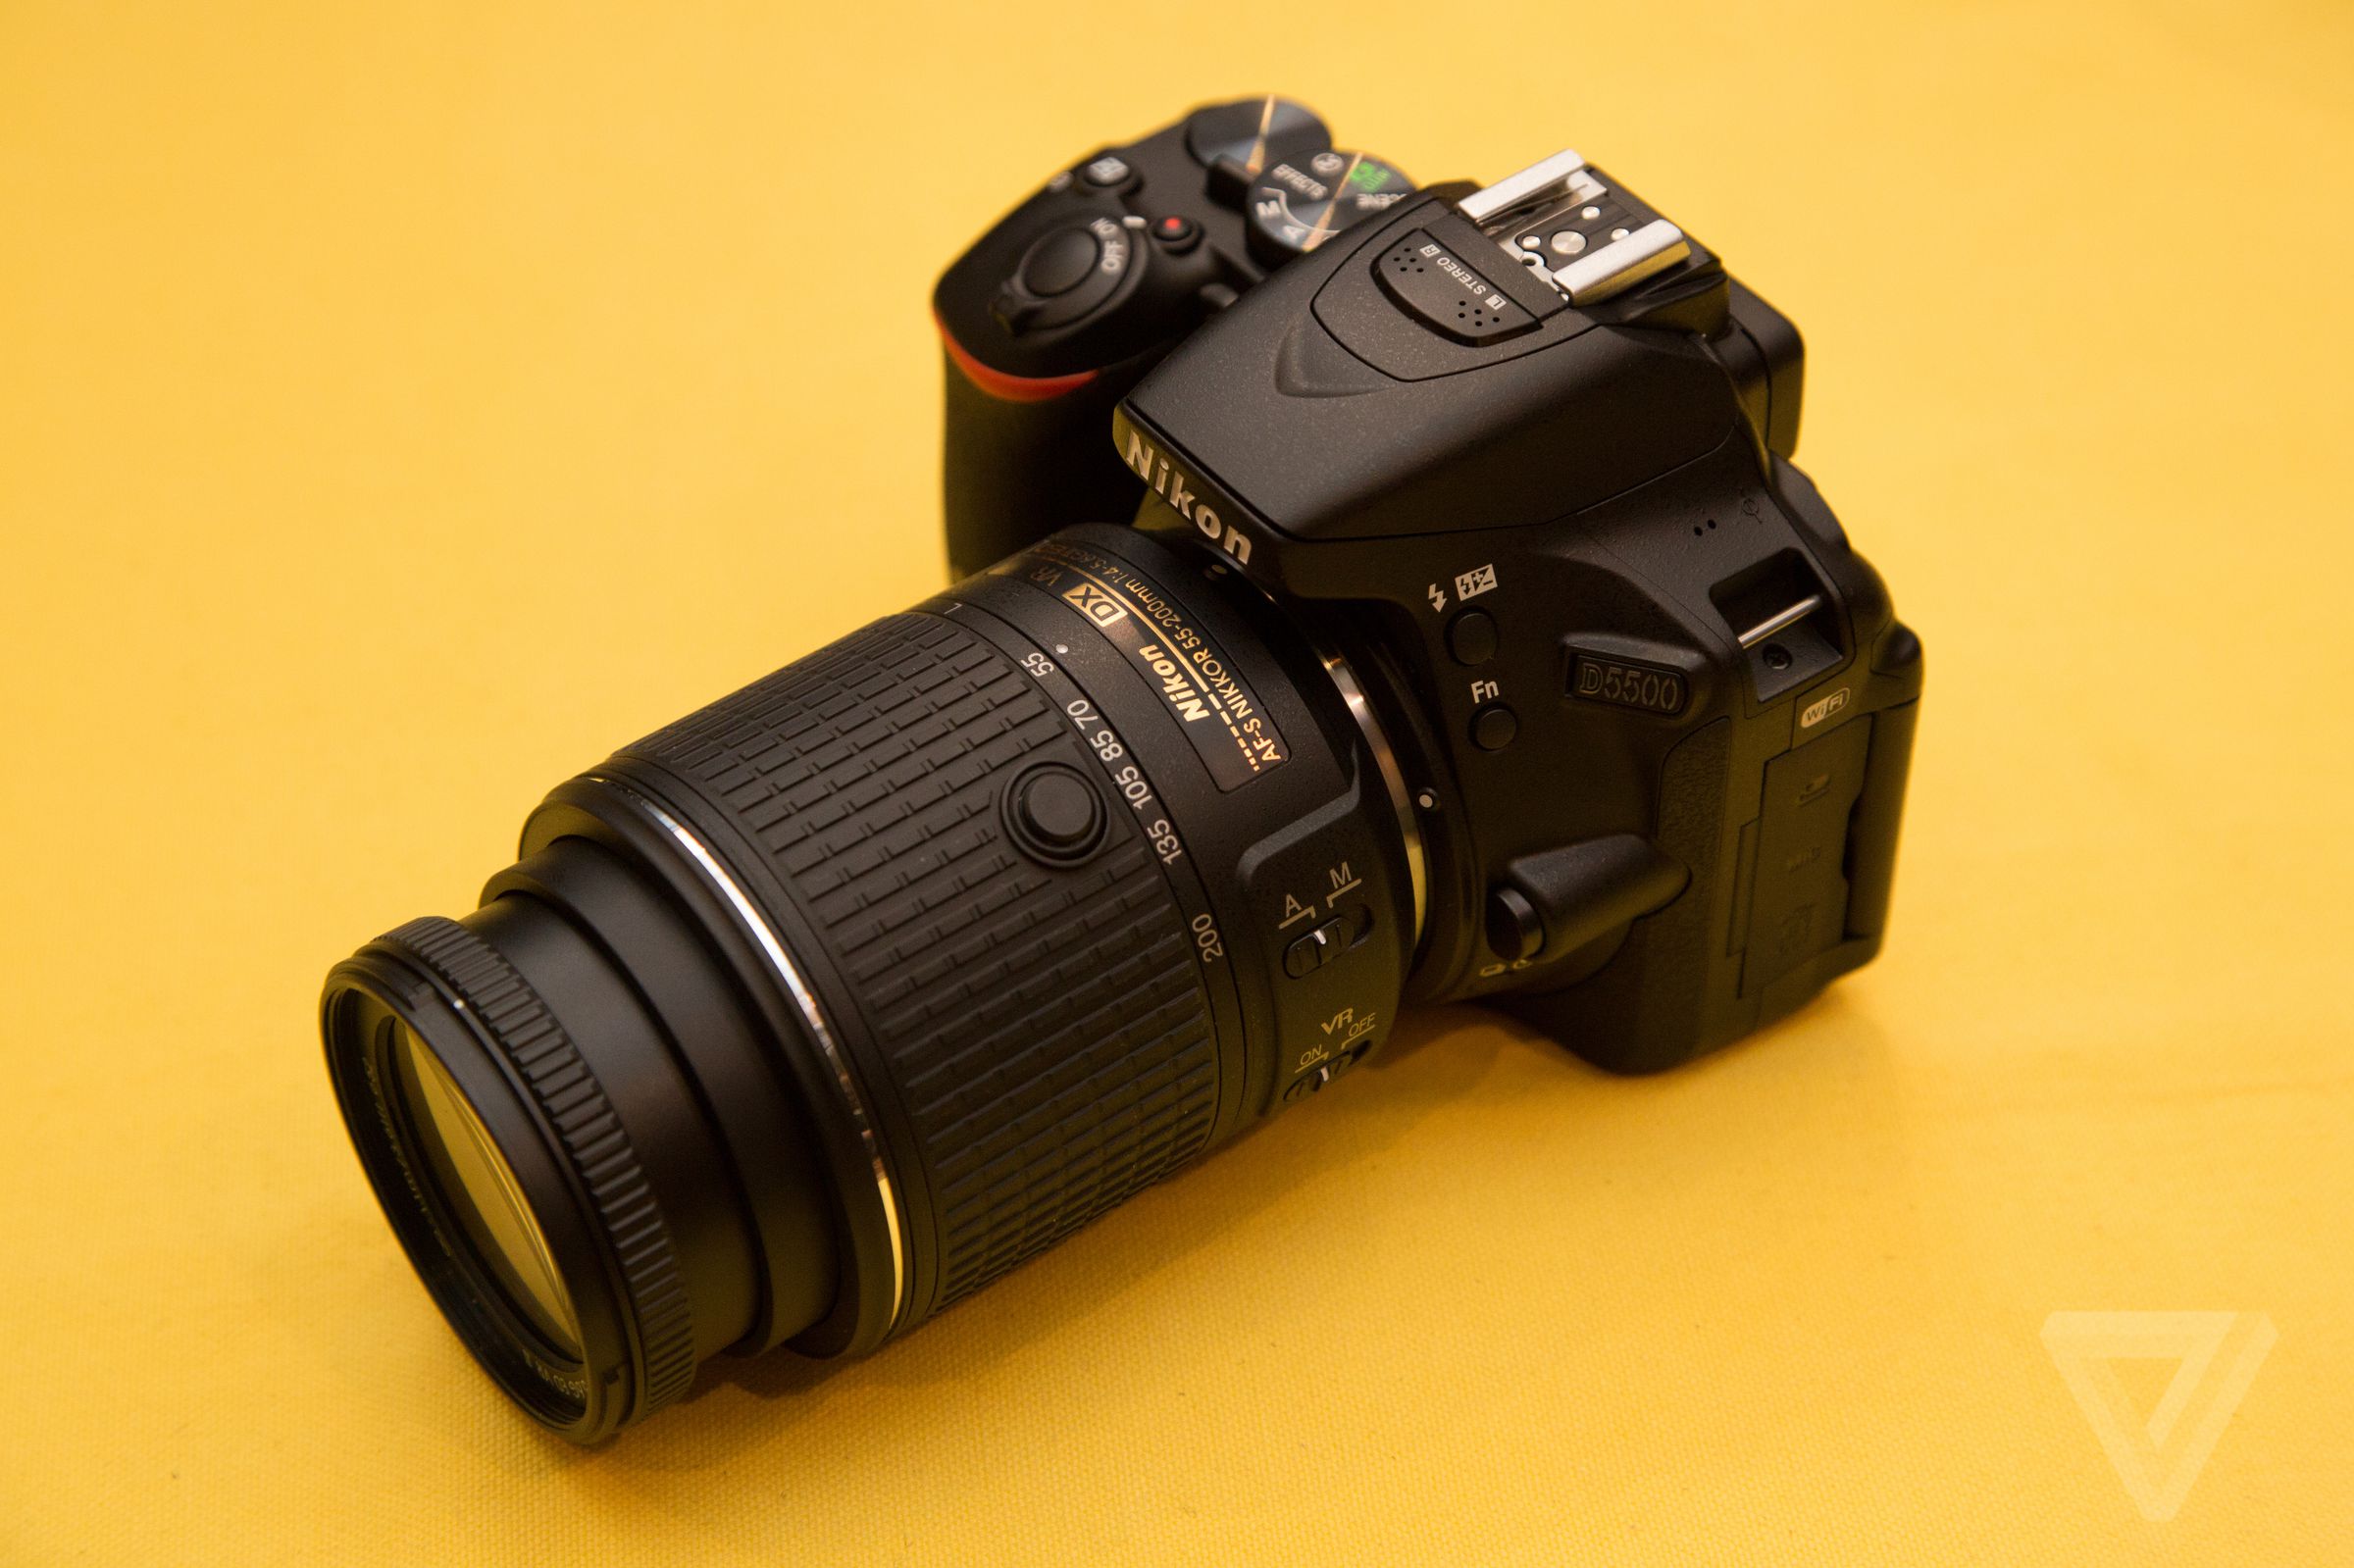 Nikon D5500 in photos